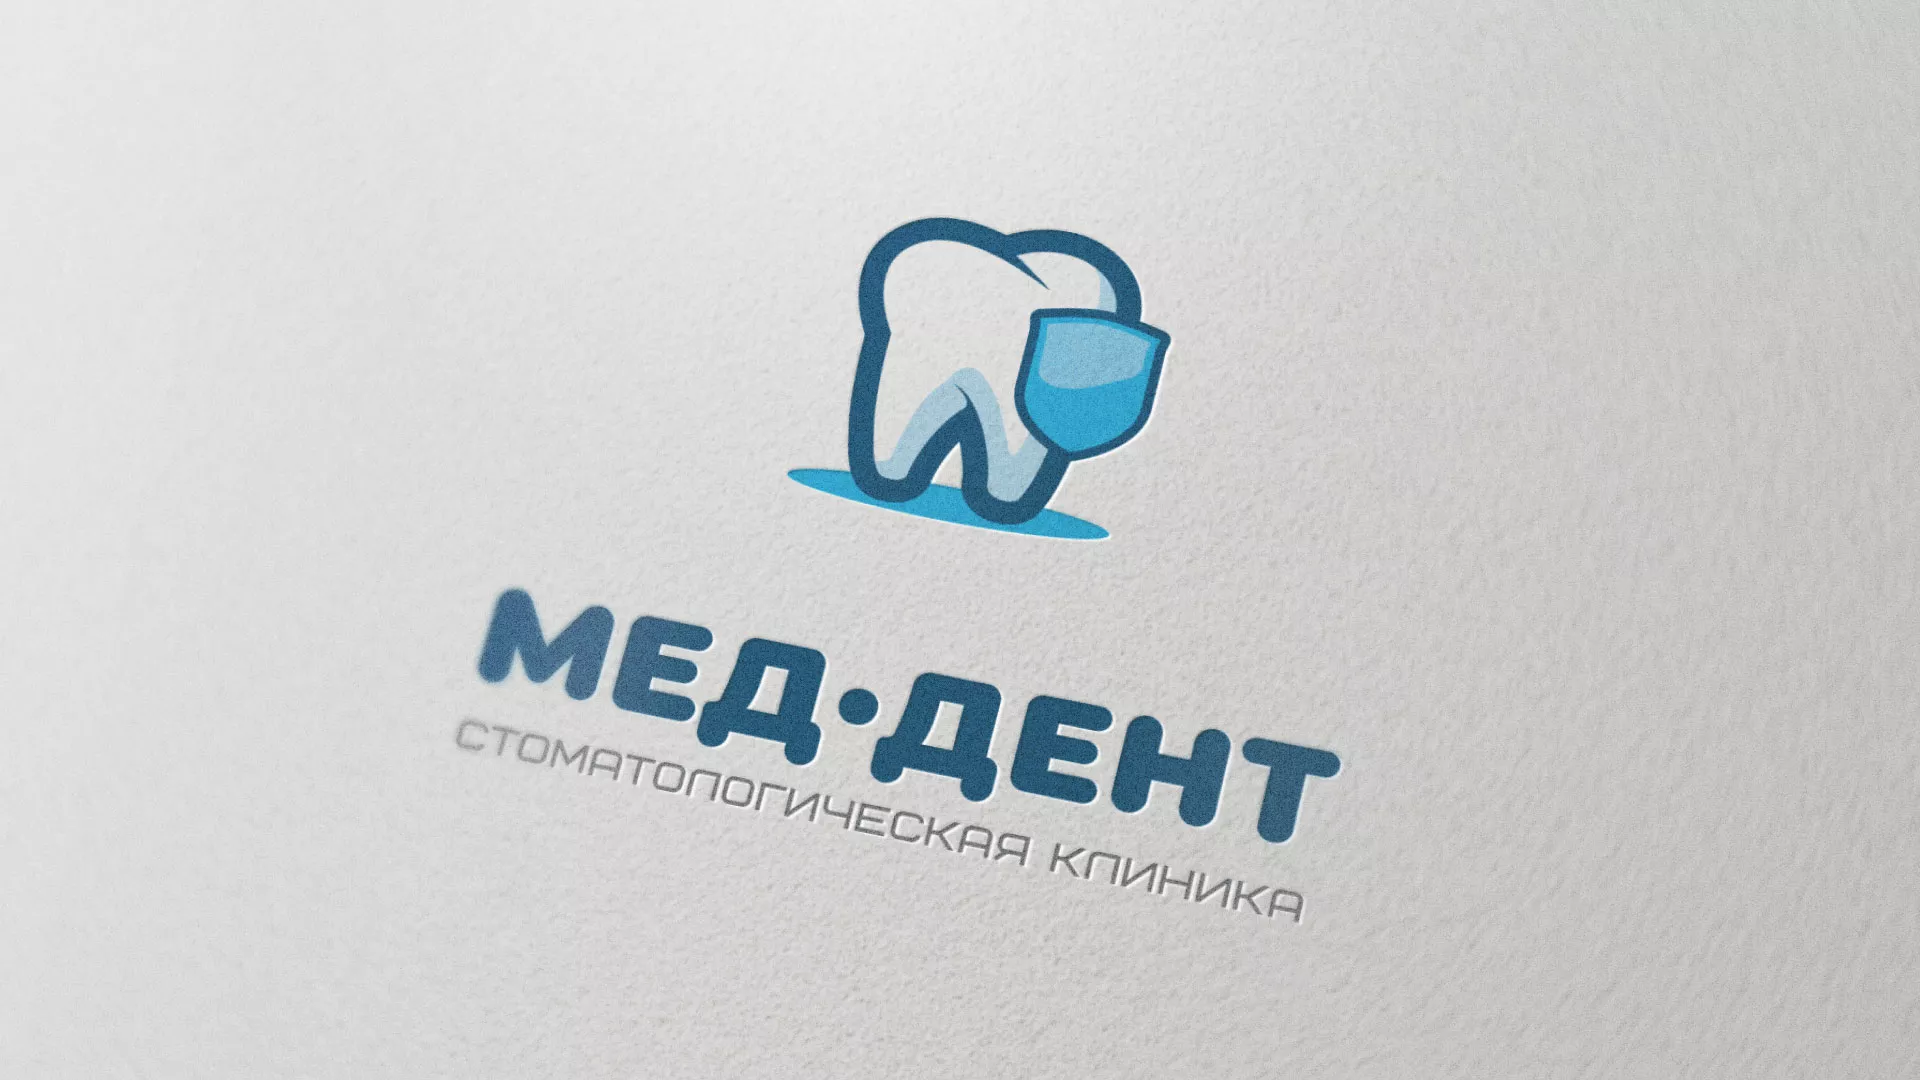 Разработка логотипа стоматологической клиники «МЕД-ДЕНТ» в Томари